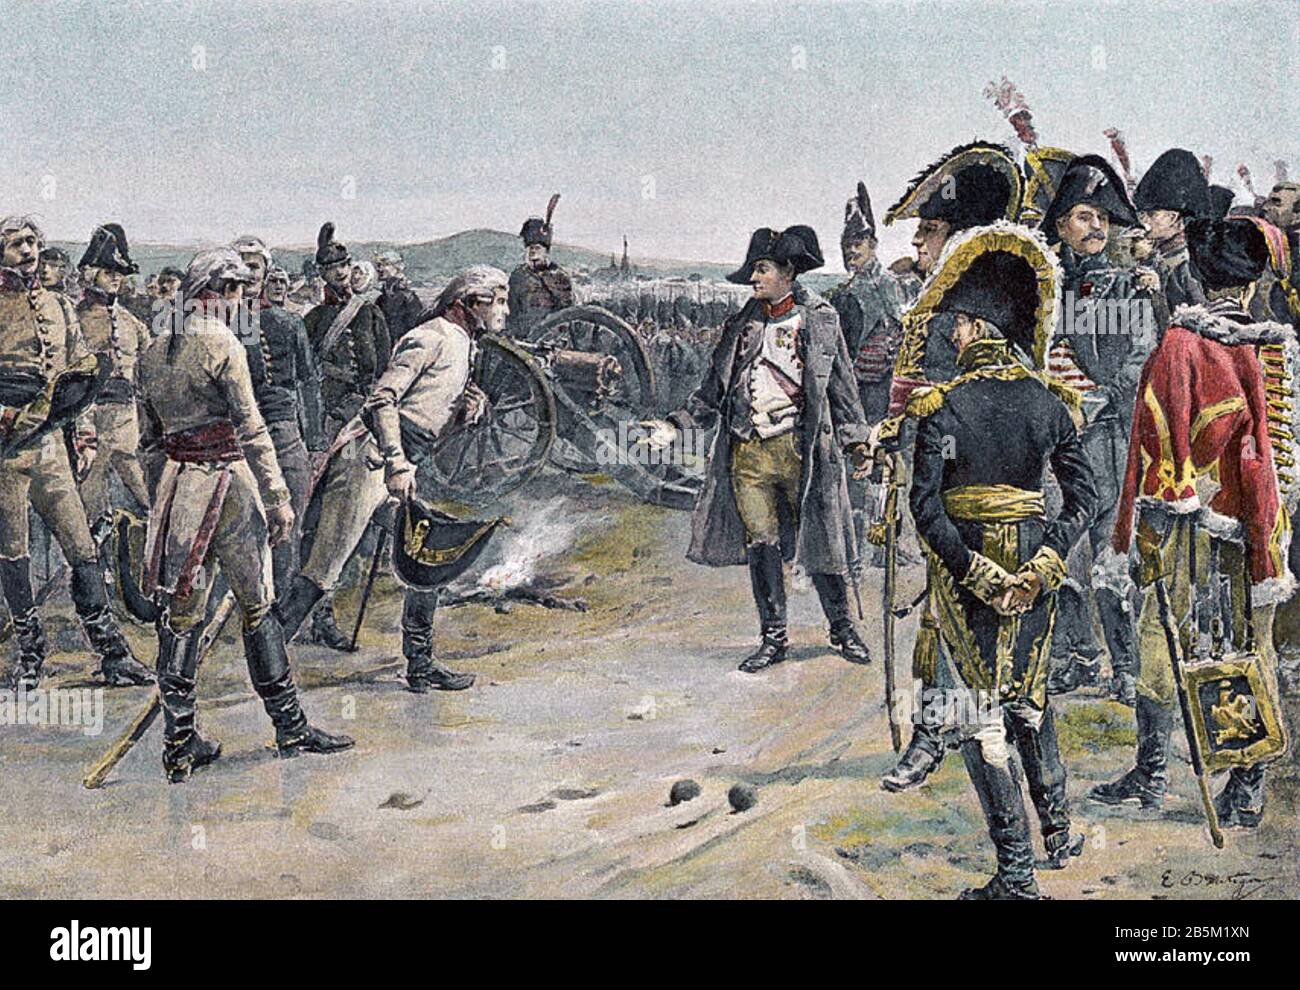 BATTAGLIA DI ULM 16-19 OTTOBRE 1805. Napoleone accetta la resa degli austriaci sotto Karl Mack von Leiberich in un'illustrazione del 1906. Foto Stock